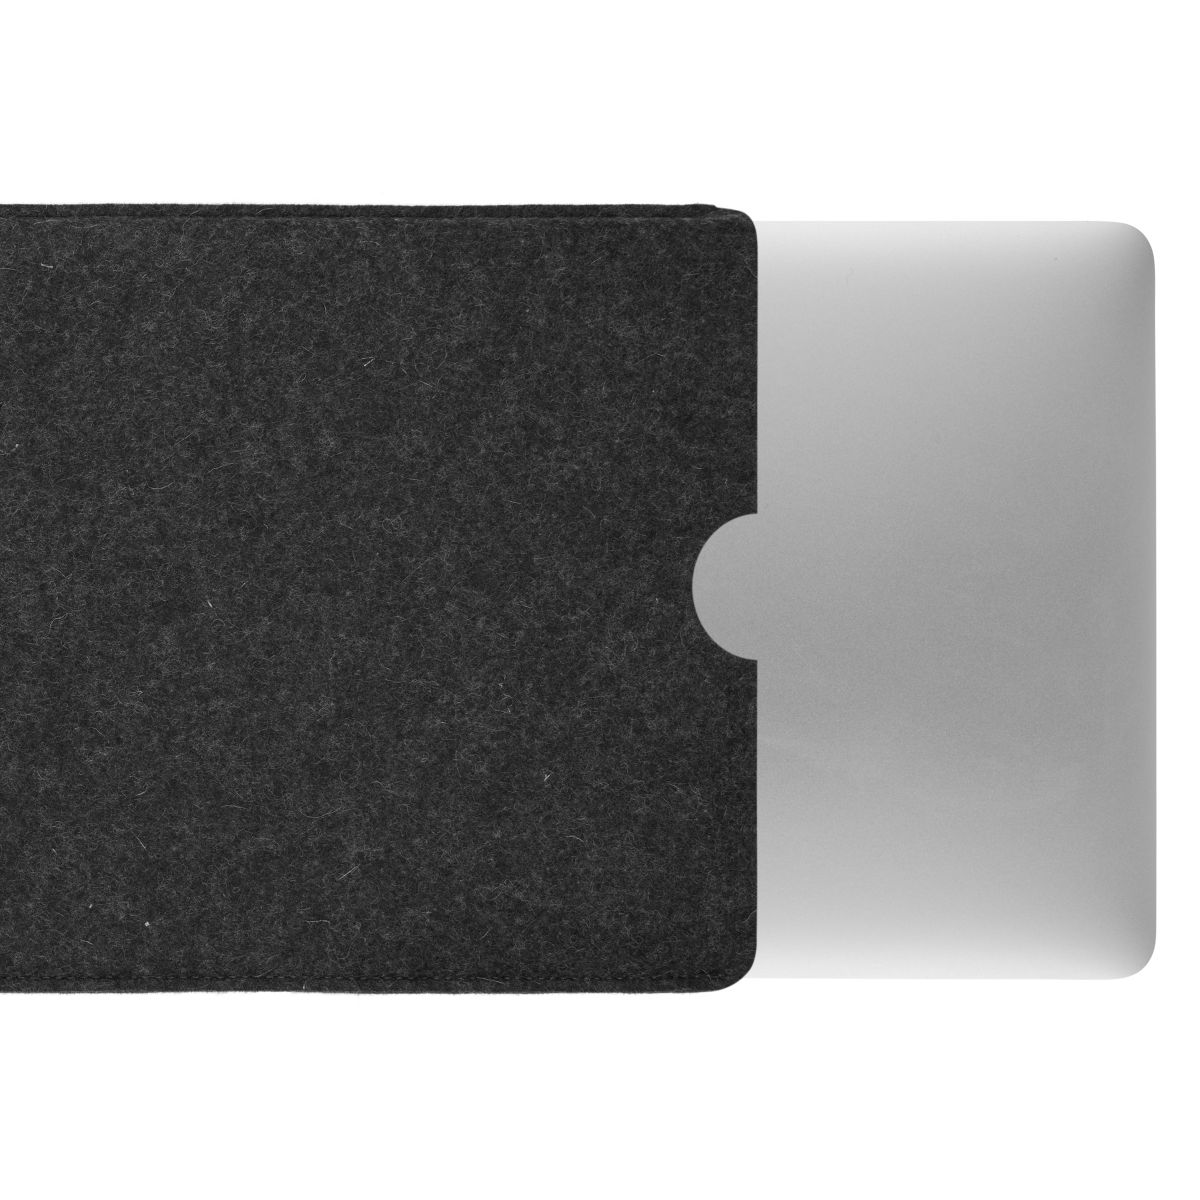 Apple Filz Anthrazit Laptop für (100% Sleeve Tasche Schurwolle), COVERKINGZ Notebook